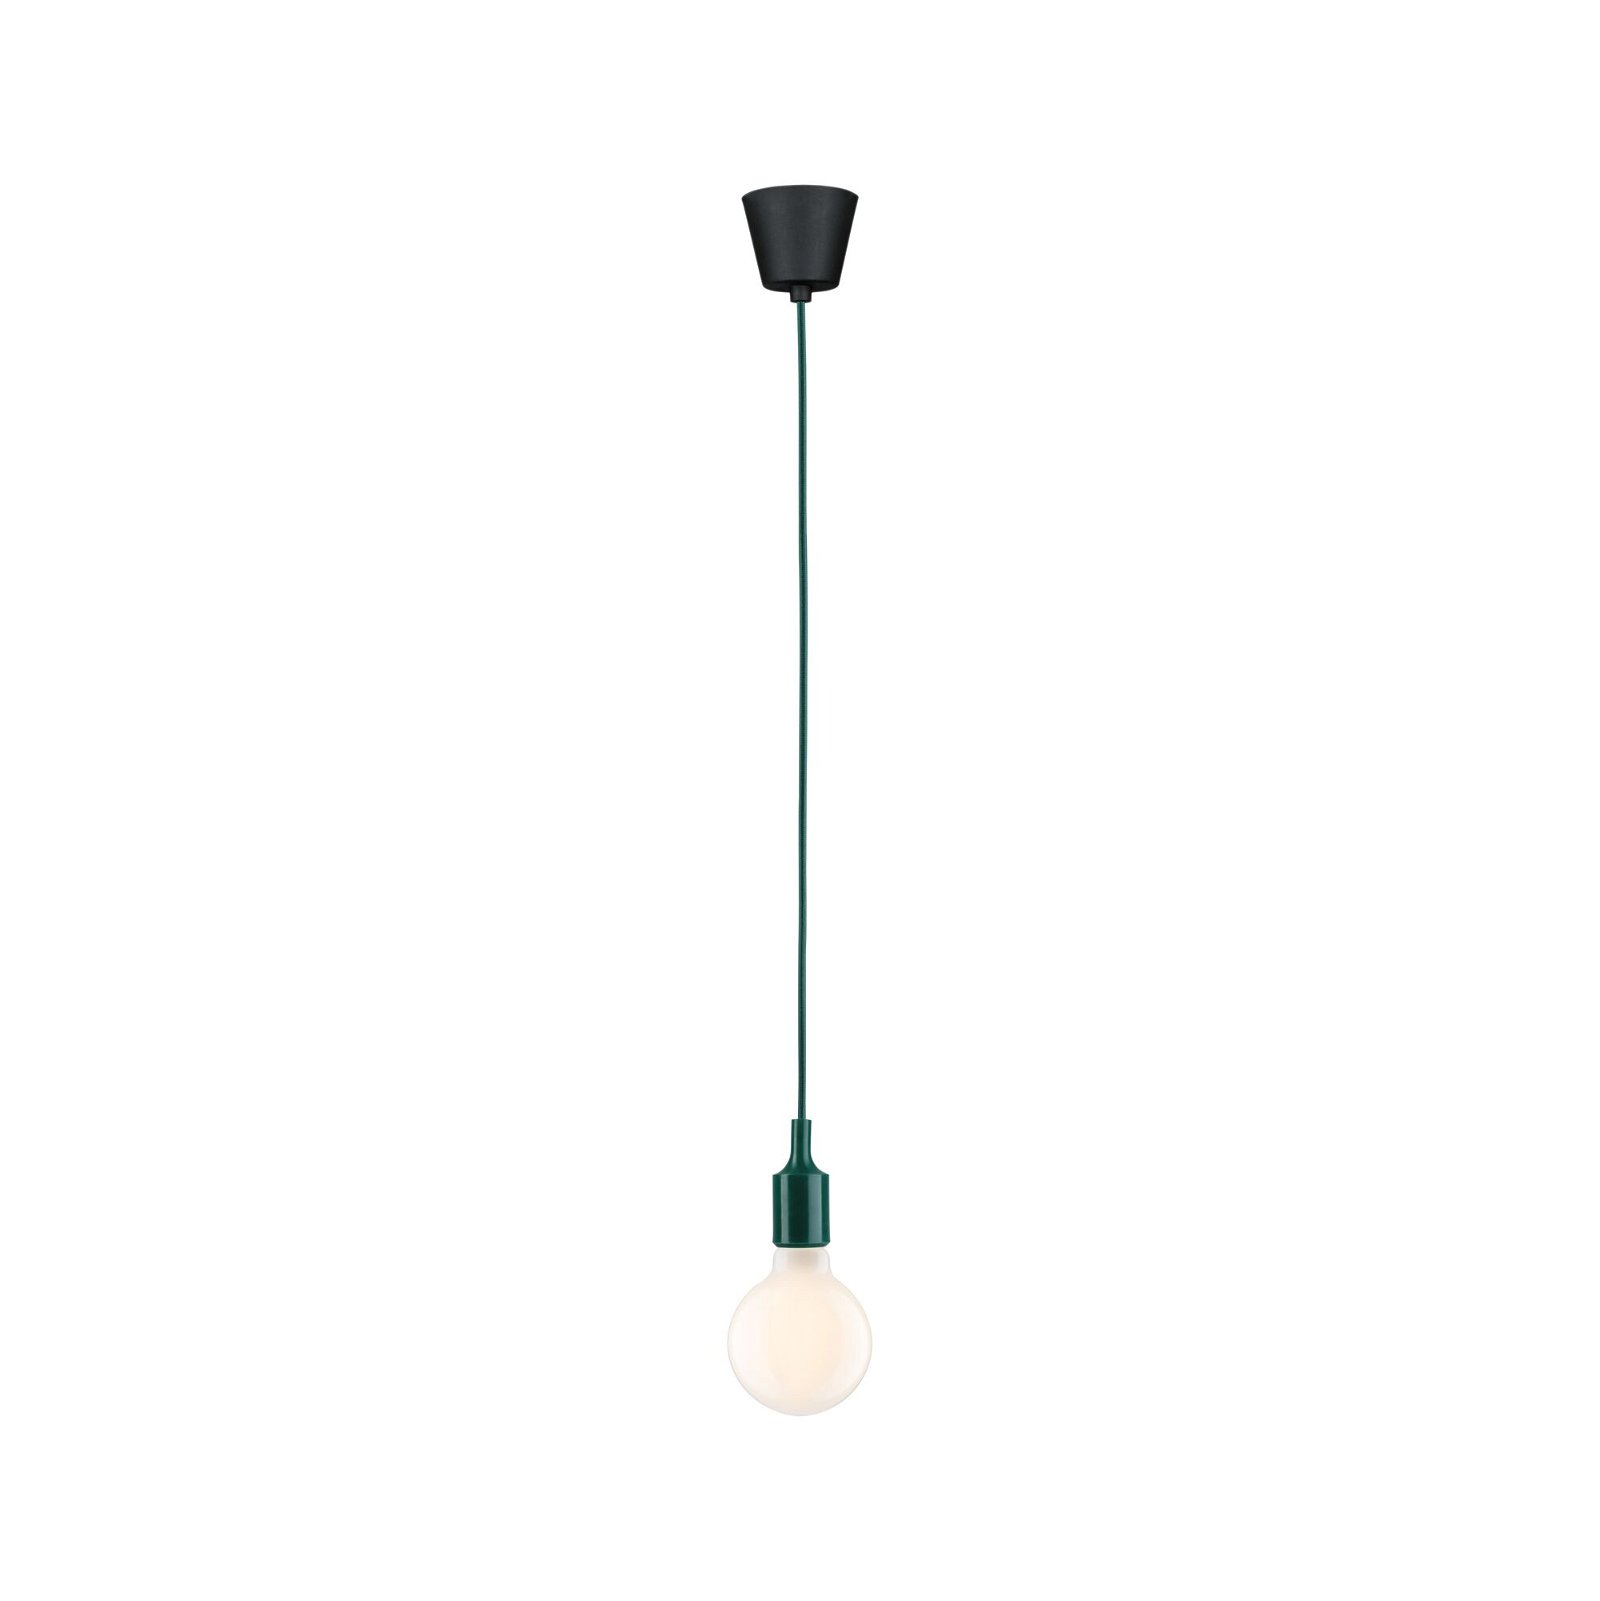 Neordic Hanglamp Ketil E27 max. 60W Groen/Zwart dimbaar Silicon/Kunststof